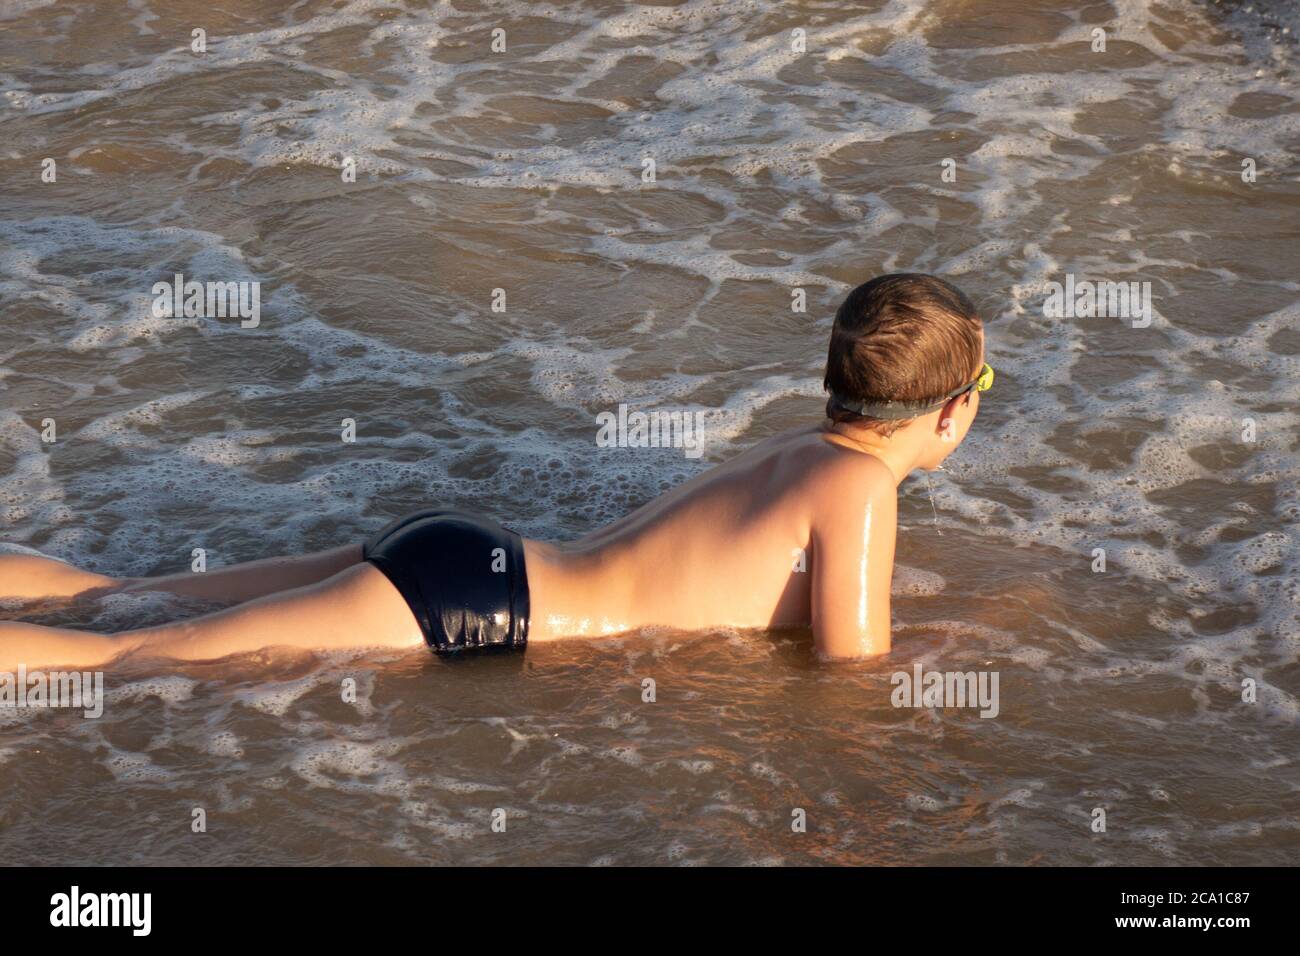 Junge 10 Jahre alt genießt Schwimmen in den Küstenwellen im Meer. Stockfoto